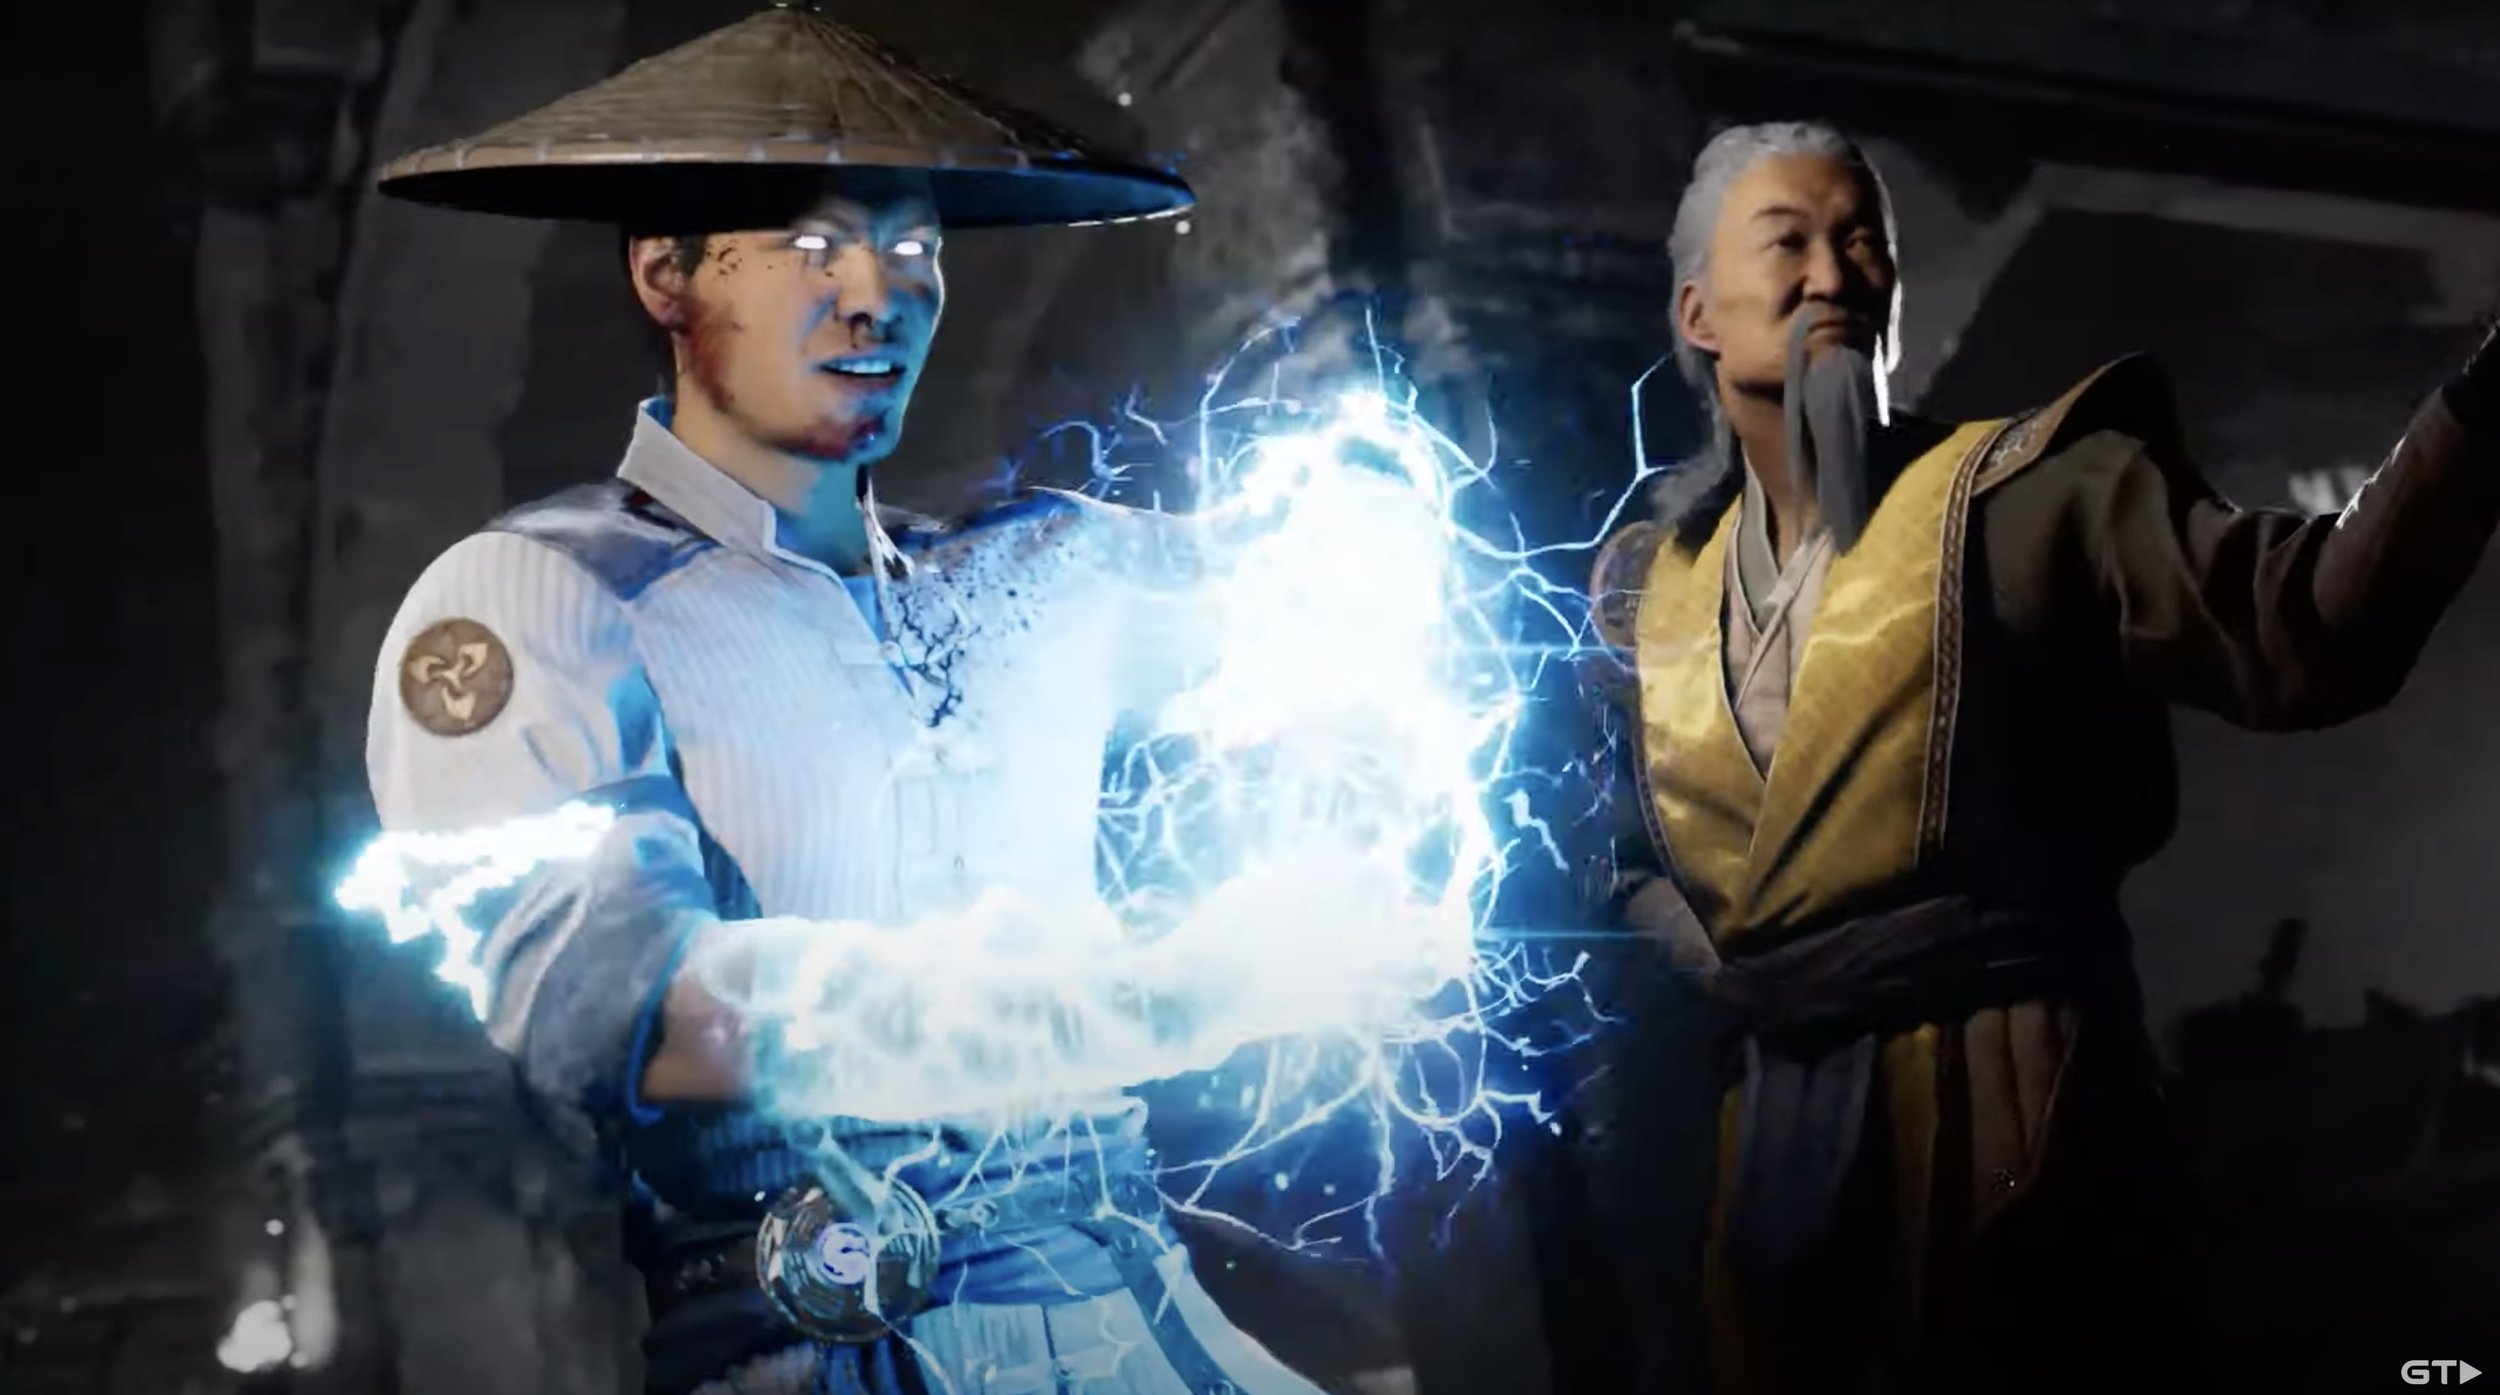 Mortal Kombat Movie: Get a Closer Look at Mileena, Kung Lao, and Many More